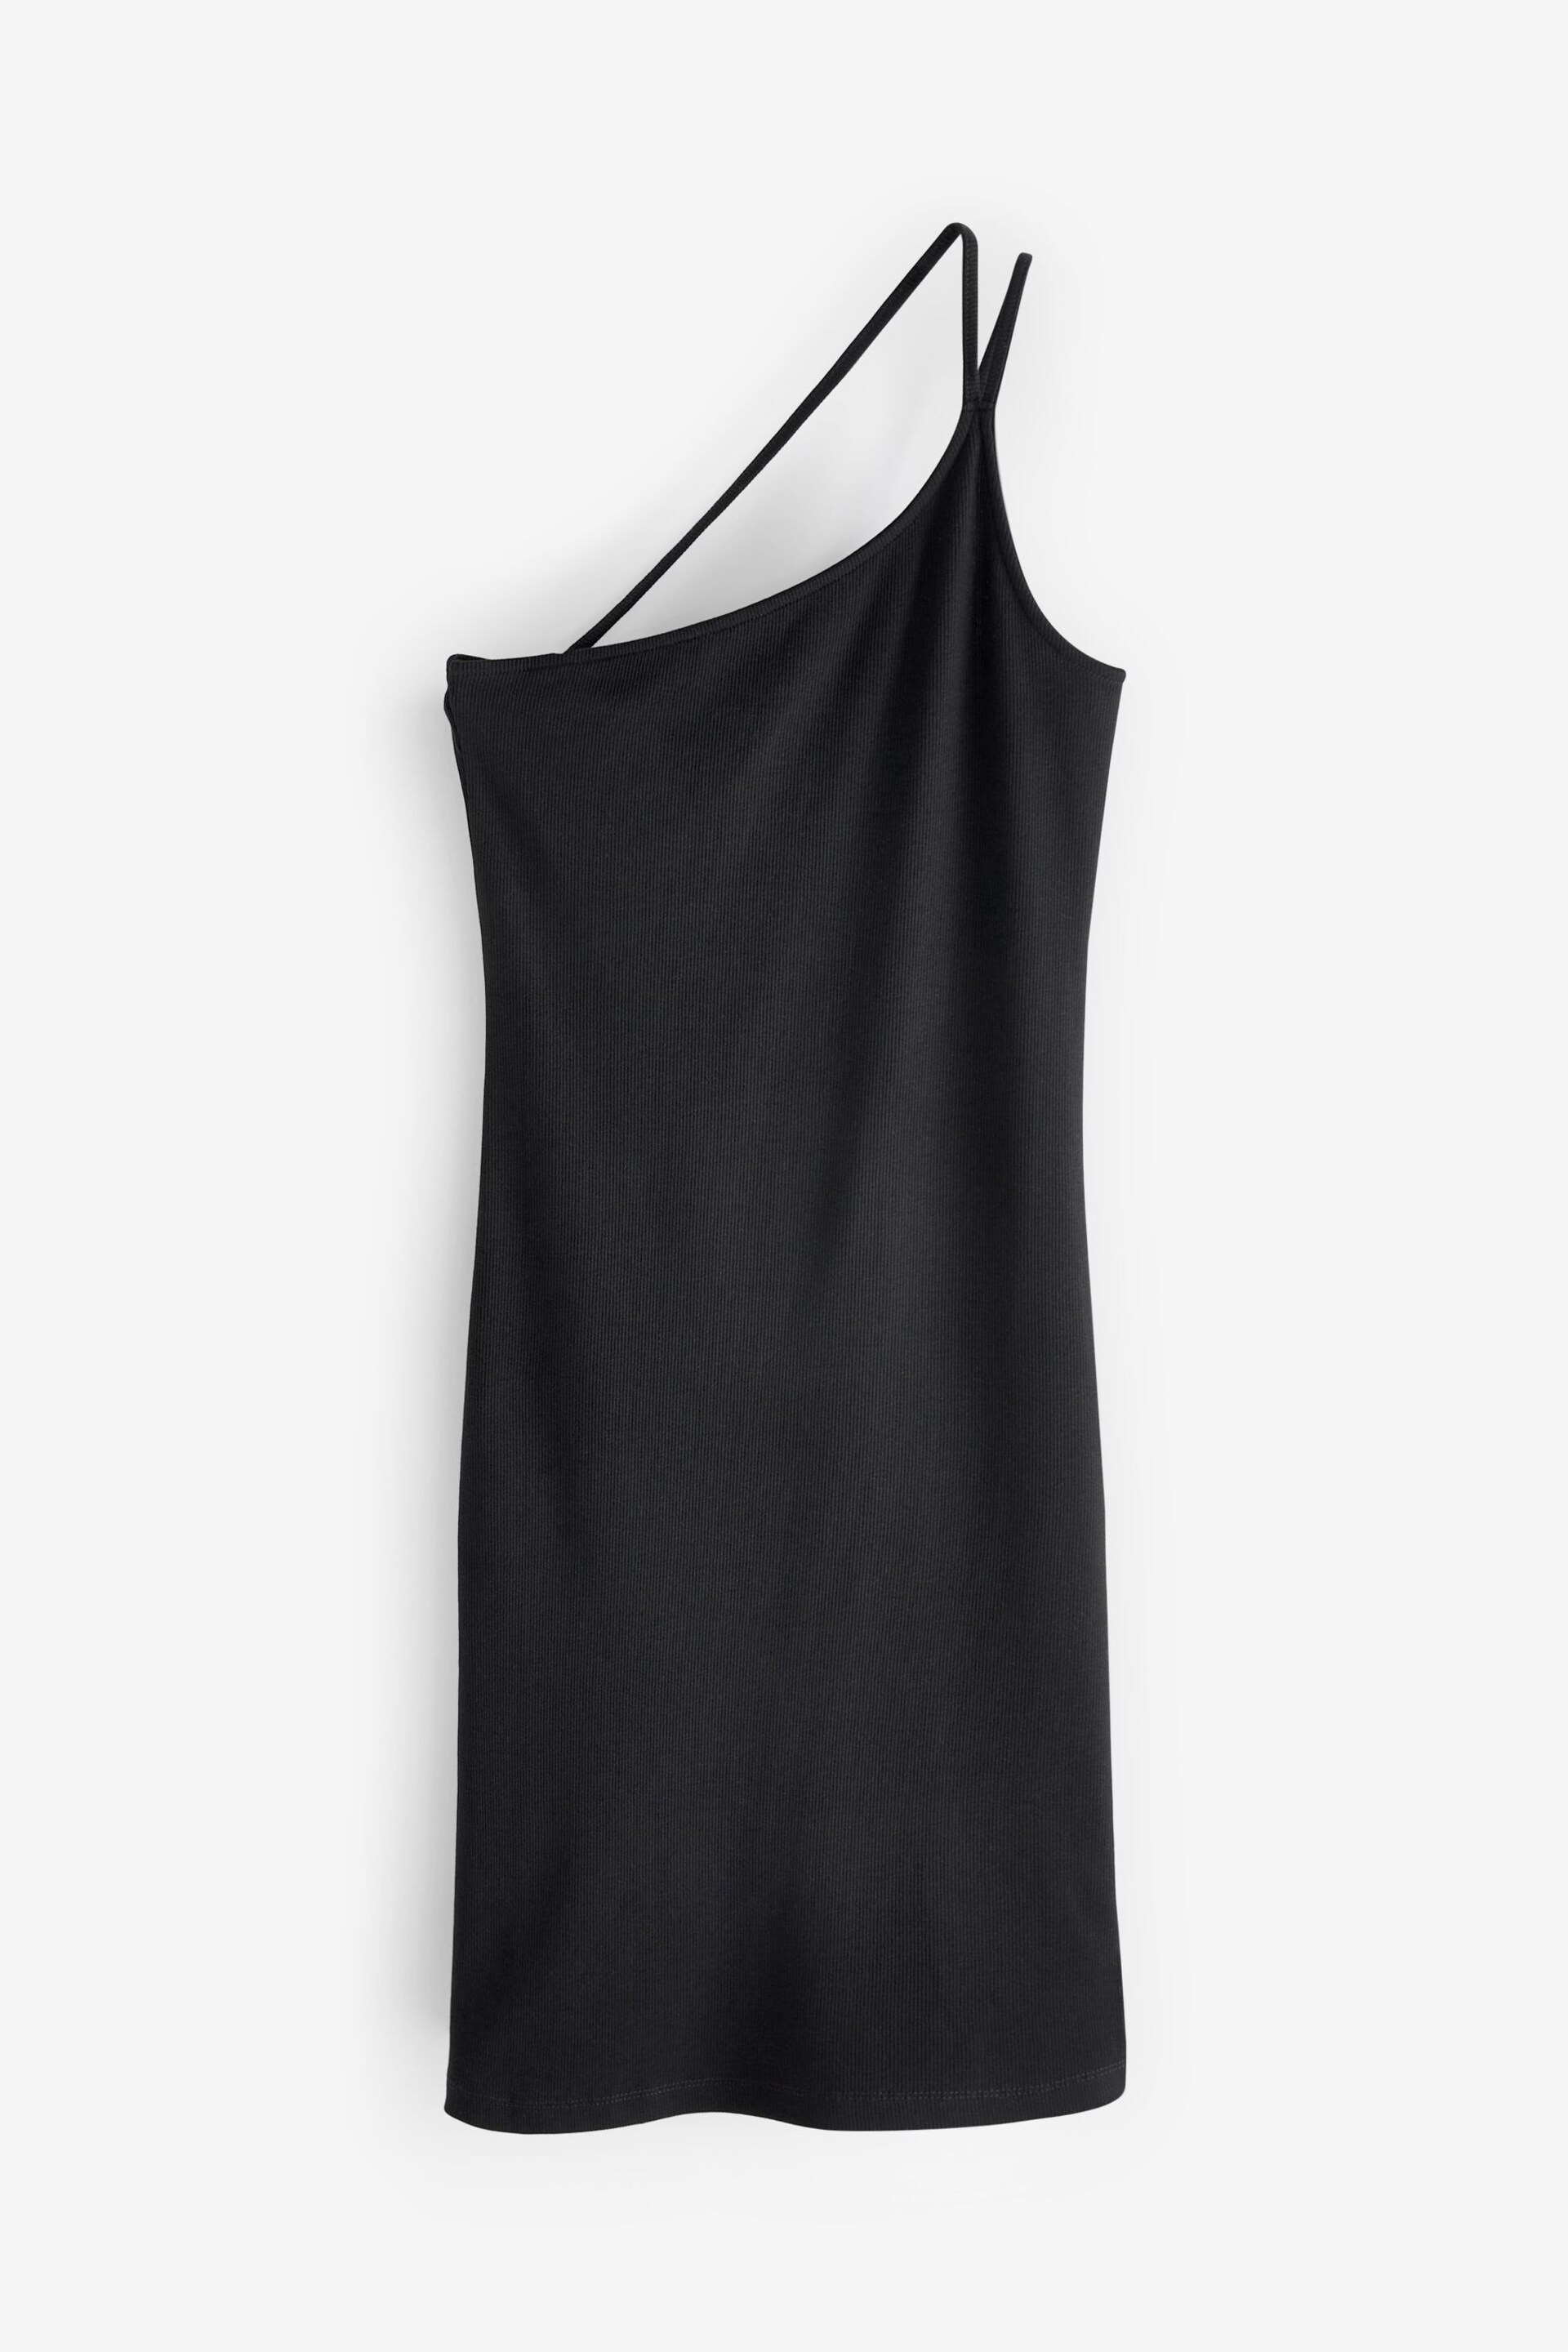 Black Double Strap One Shoulder Dress - Image 6 of 6